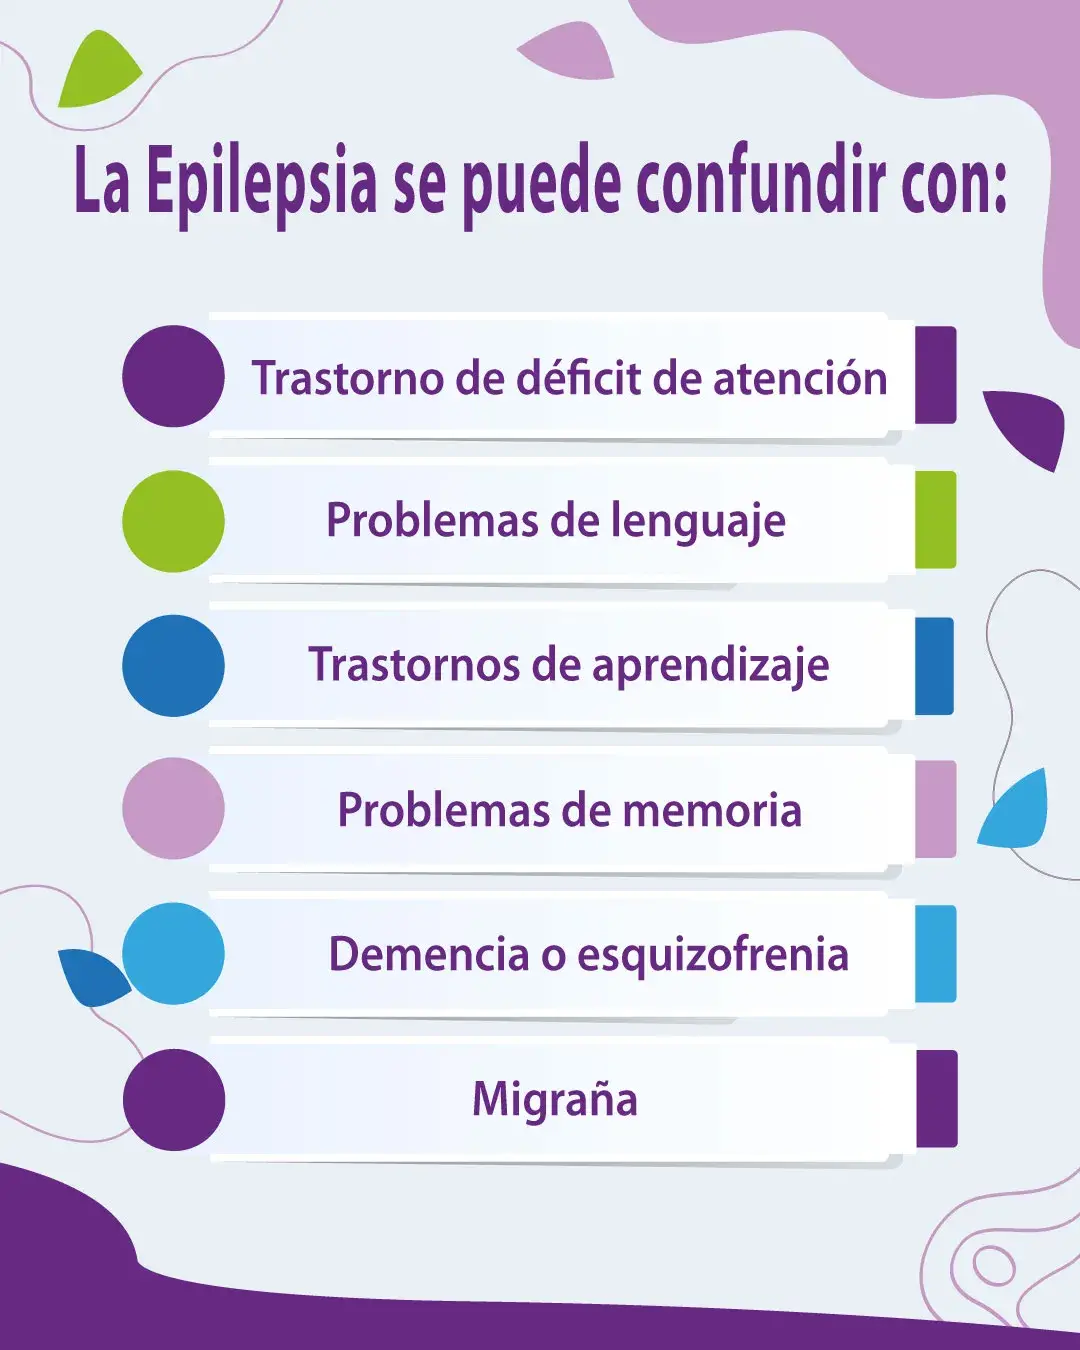 Con que se puede confundir la epilepsia